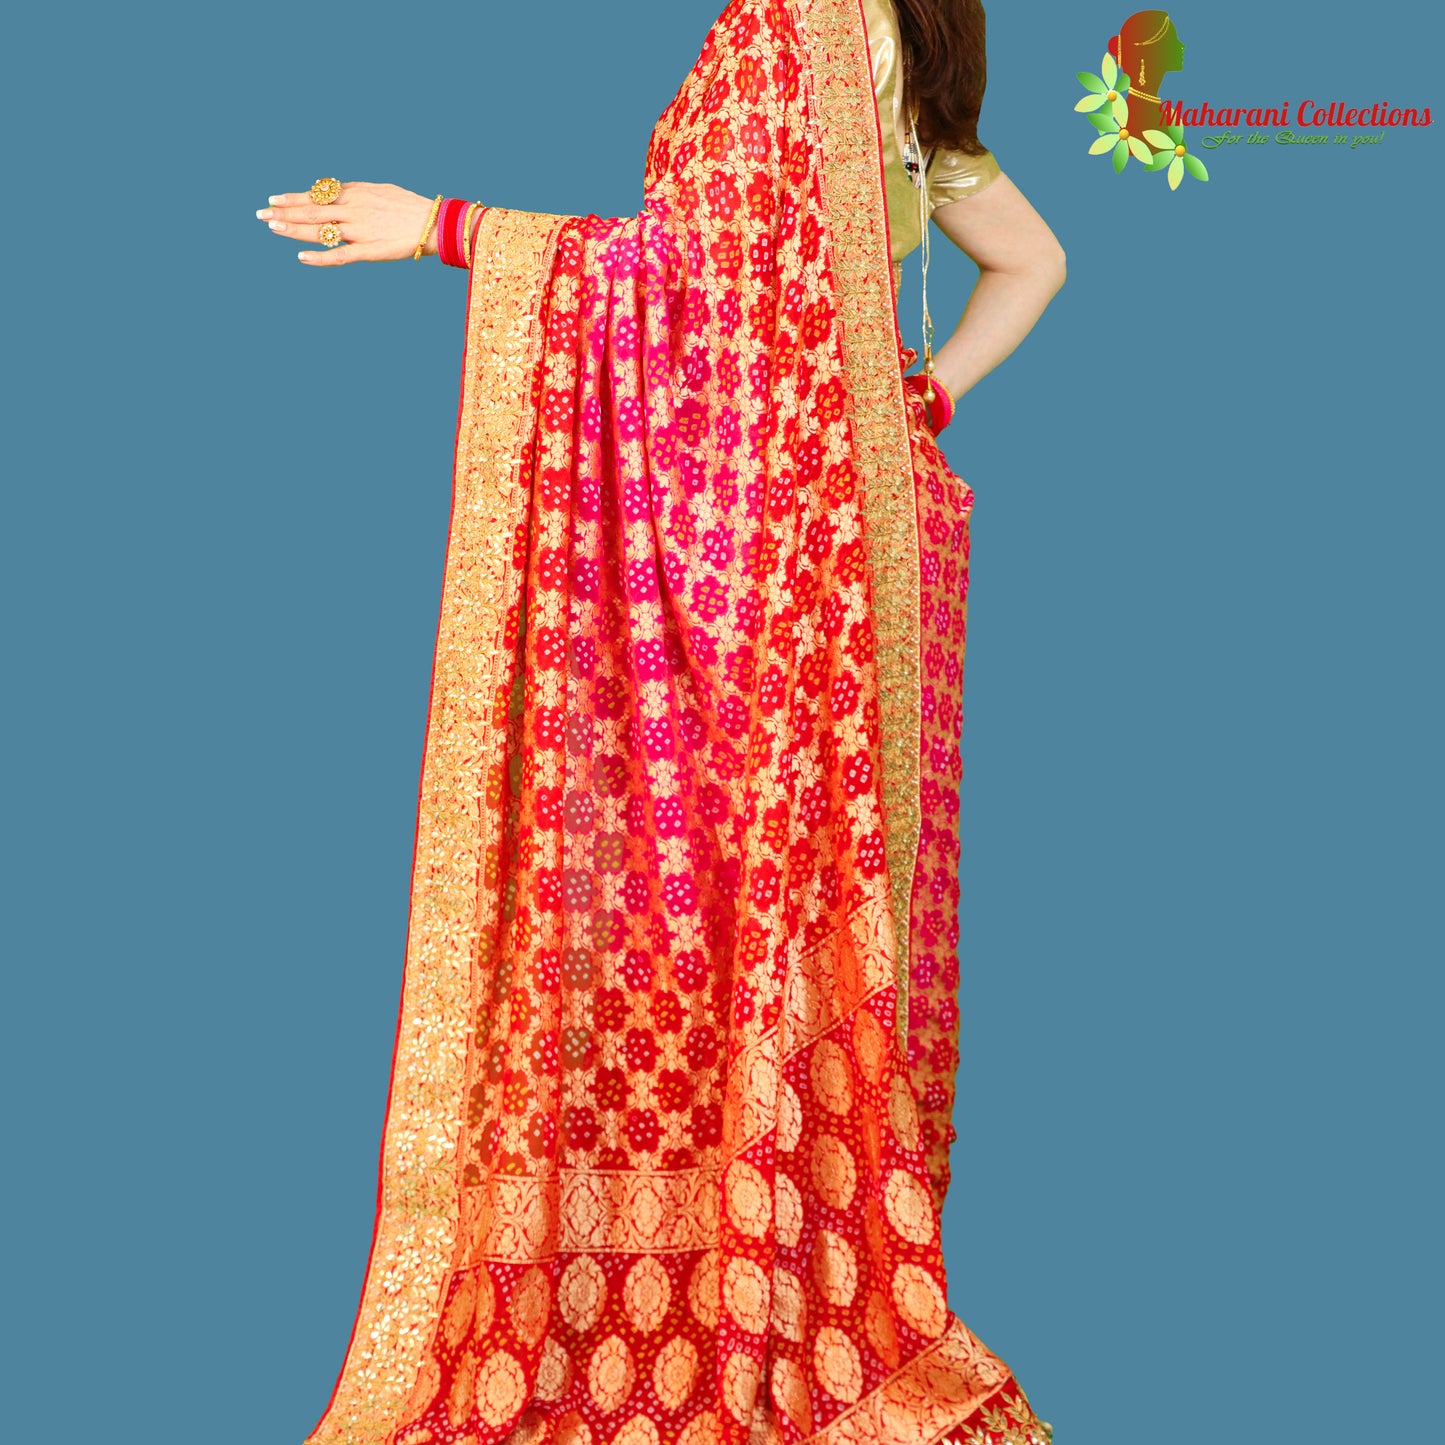 Maharani's Pure Handloom Banarasi Bandhej Silk Saree - Bridal Red (with Stitched Blouse and Petticoat)